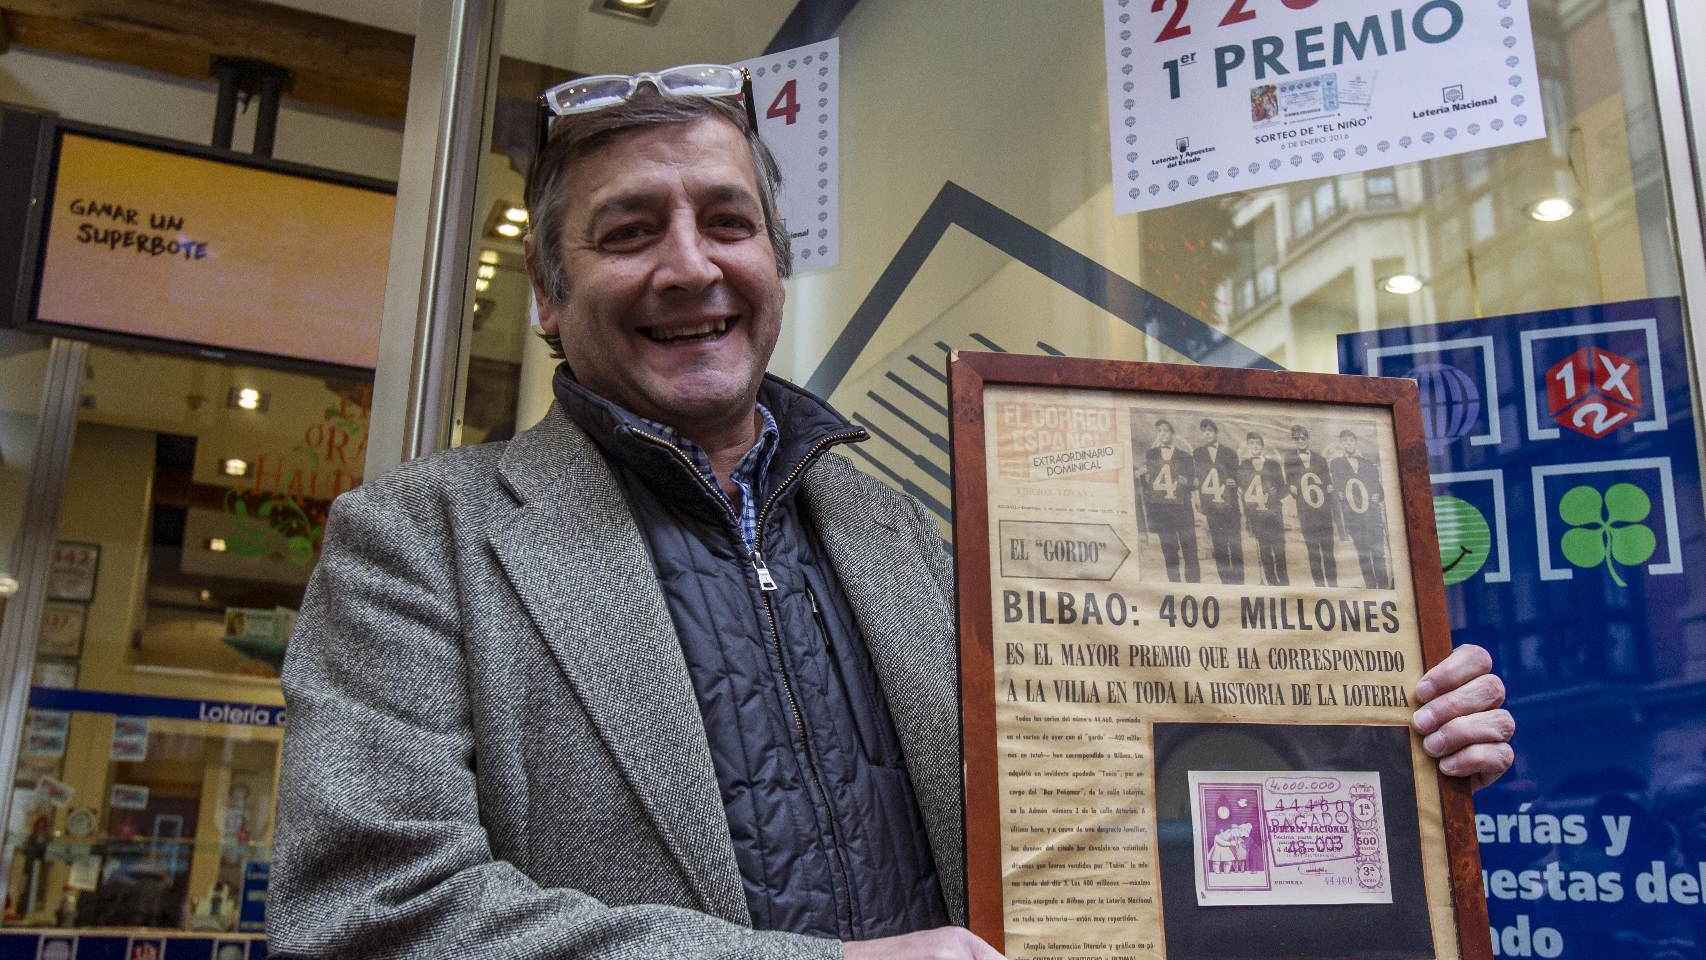 El titular de la administración número 25 de Bilbao Lotería los 400 millones, Iñigo Gómez Barrengoa.